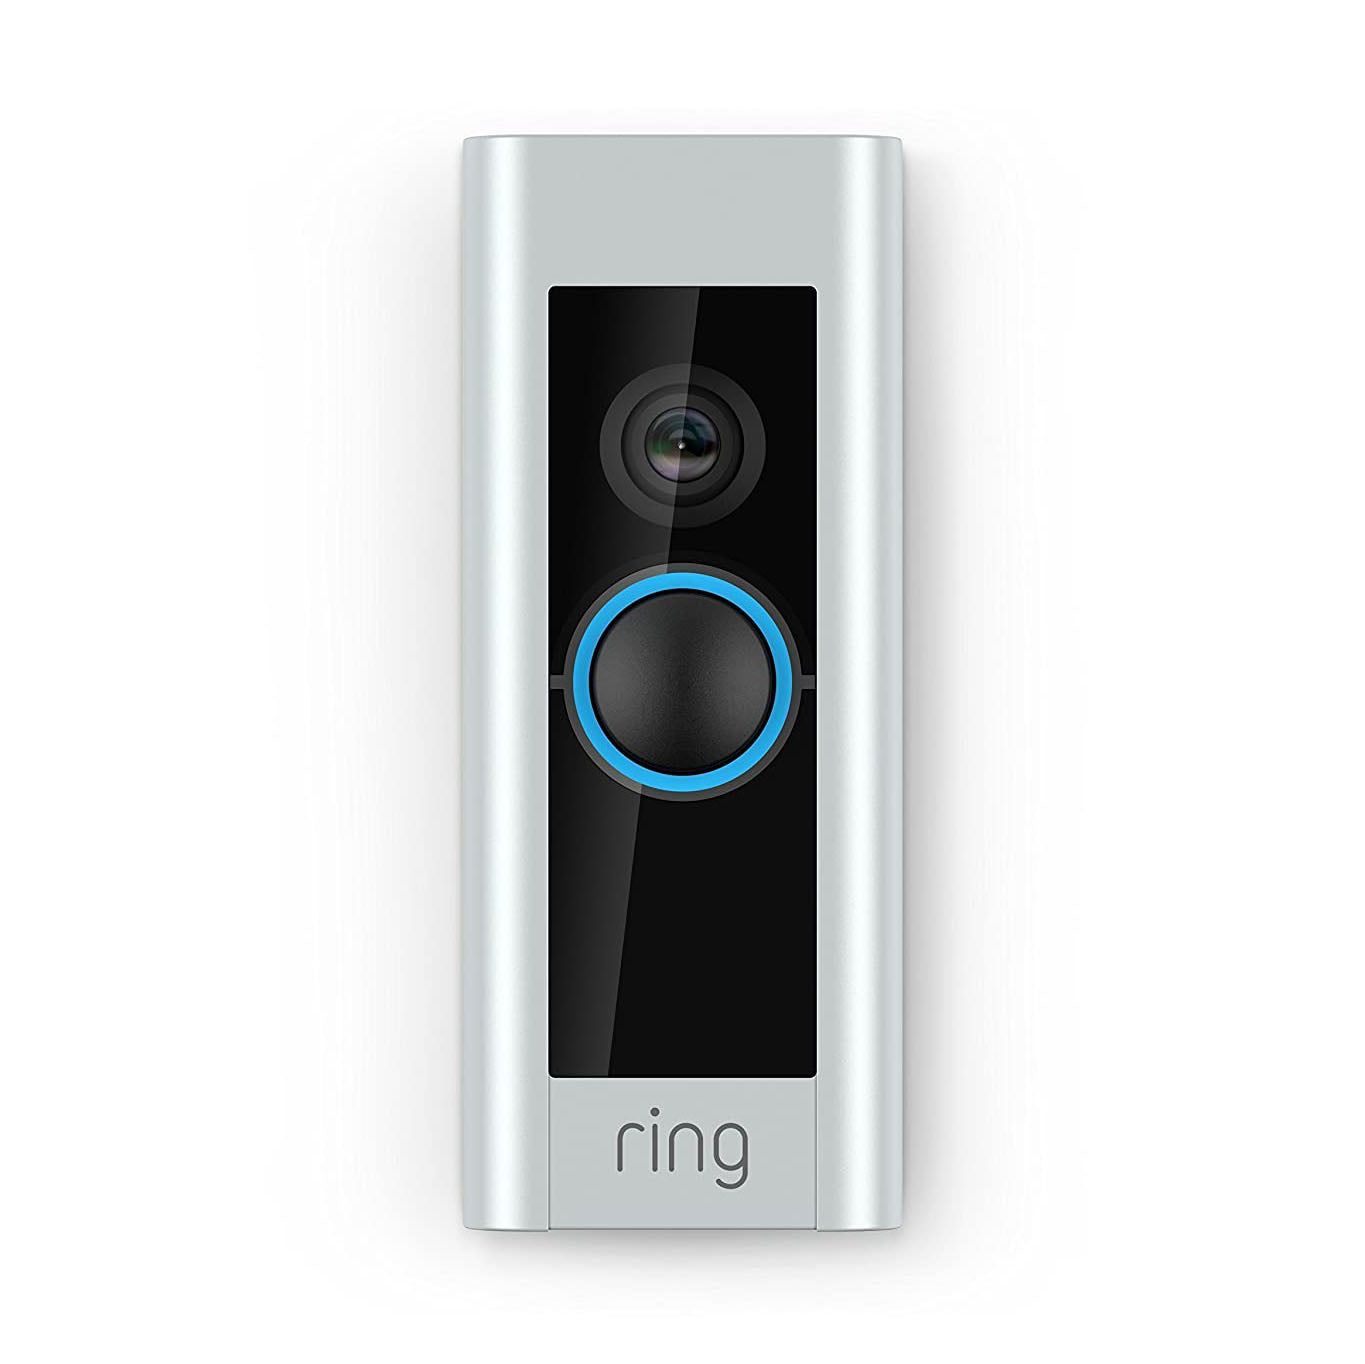 Ring Video Doorbell Pro with Built-in Alexa - Satin Nickel (Certified Refurbished)